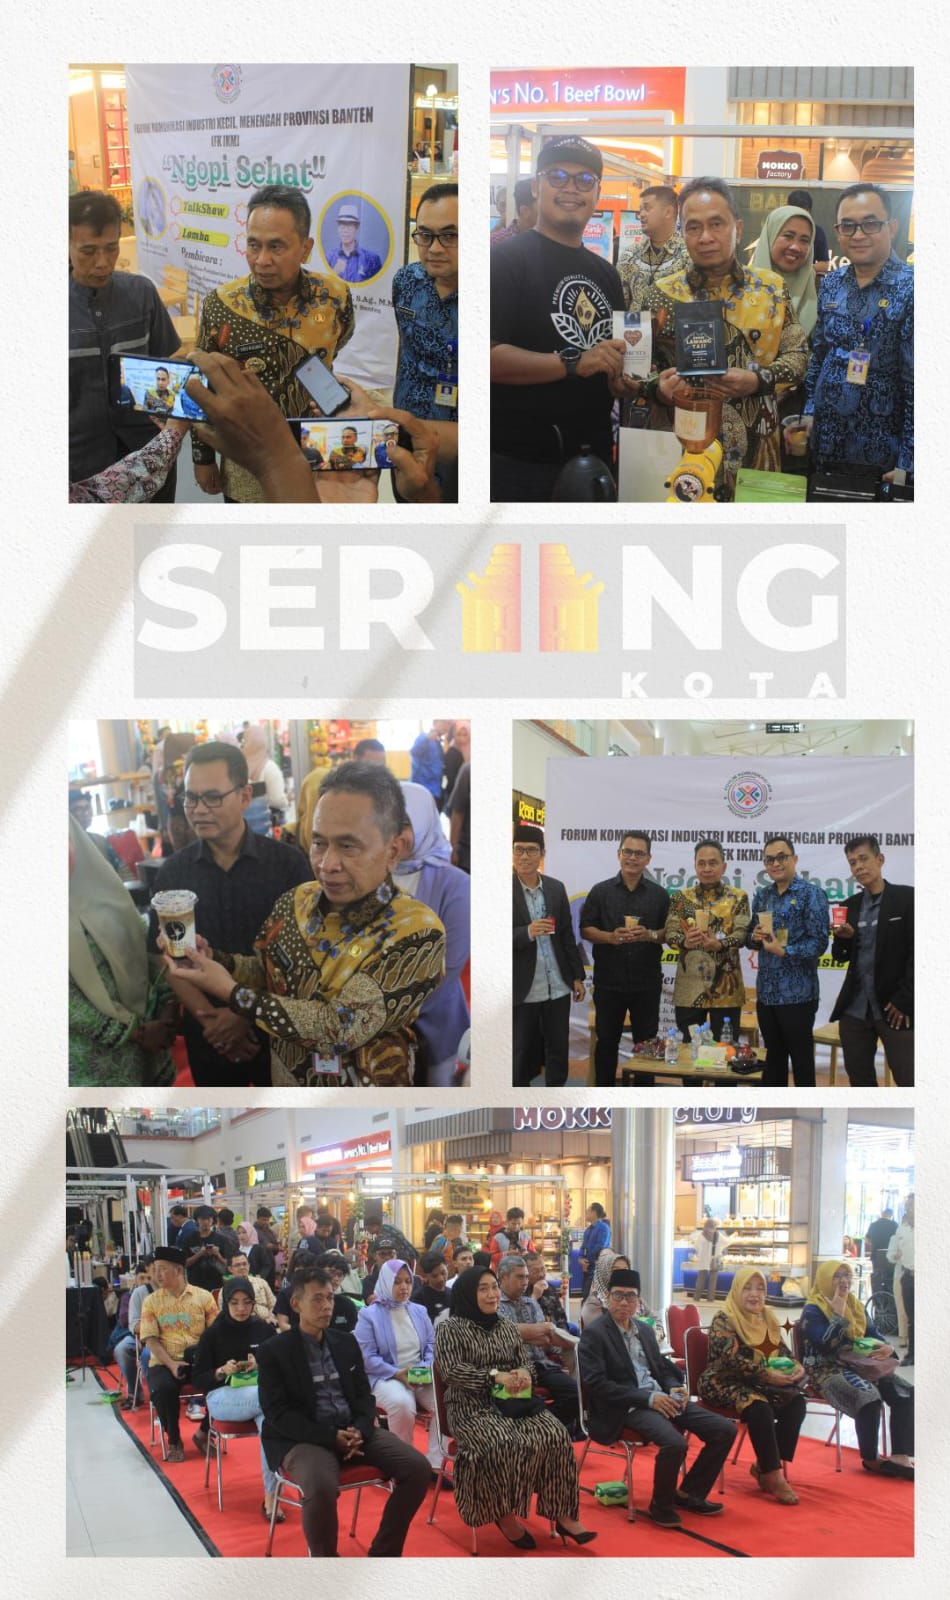 Pj Walikota Serang Membuka Festival Kopi Banten di MOS, Pj Walikota: Kegiatan UMKM terus di Tingkatkan Agar Roda Perkonomian di Kota Serang bisa Berjalan